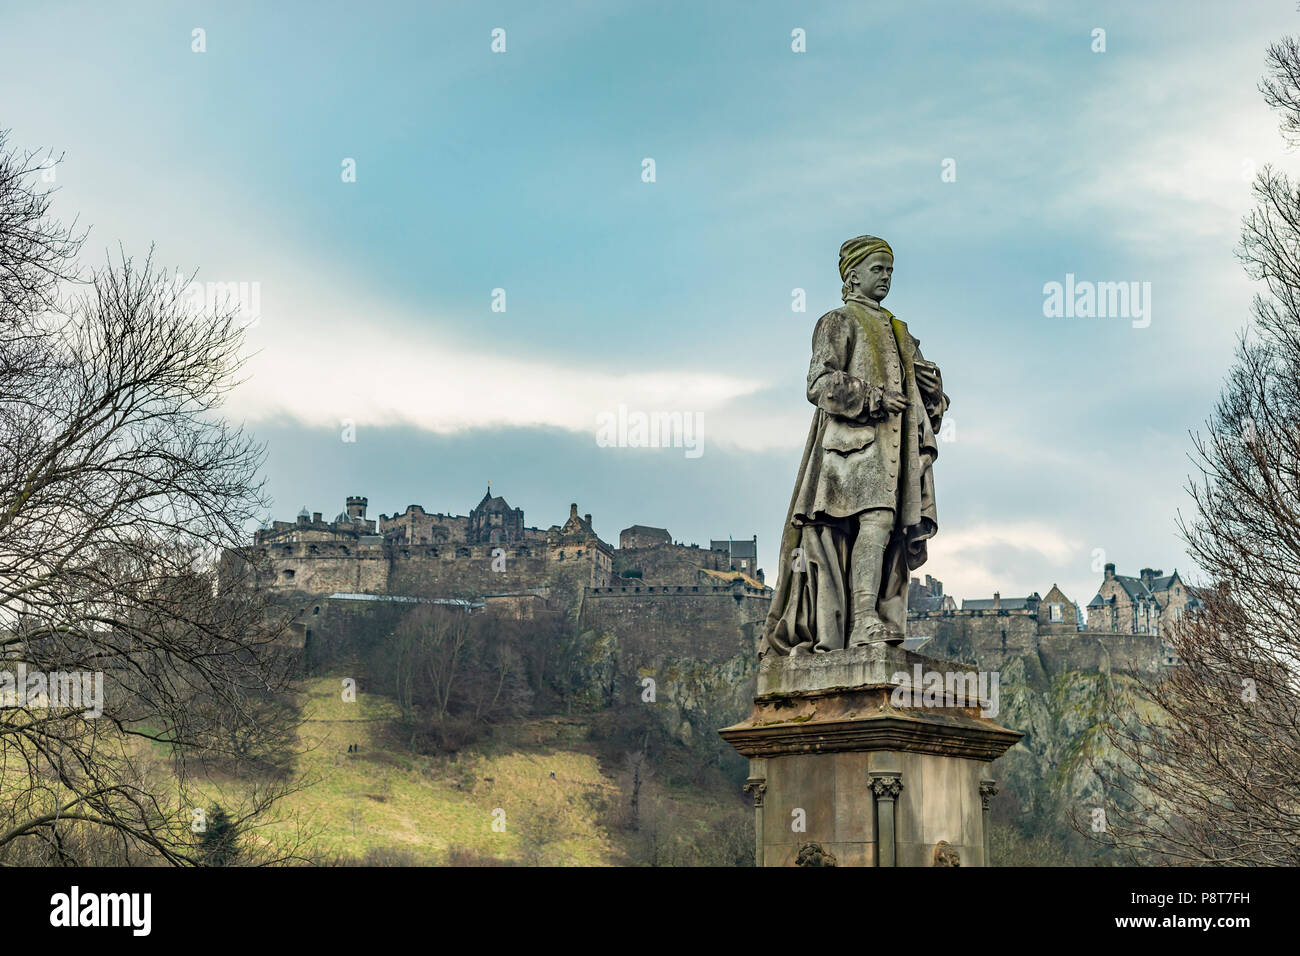 Edinburgh, Großbritannien, 13. Januar 2018: Die Statue von Allan Ramsay vor dem Schloss von Edinburgh in Schottland, Vereinigtes Königreich. Stockfoto